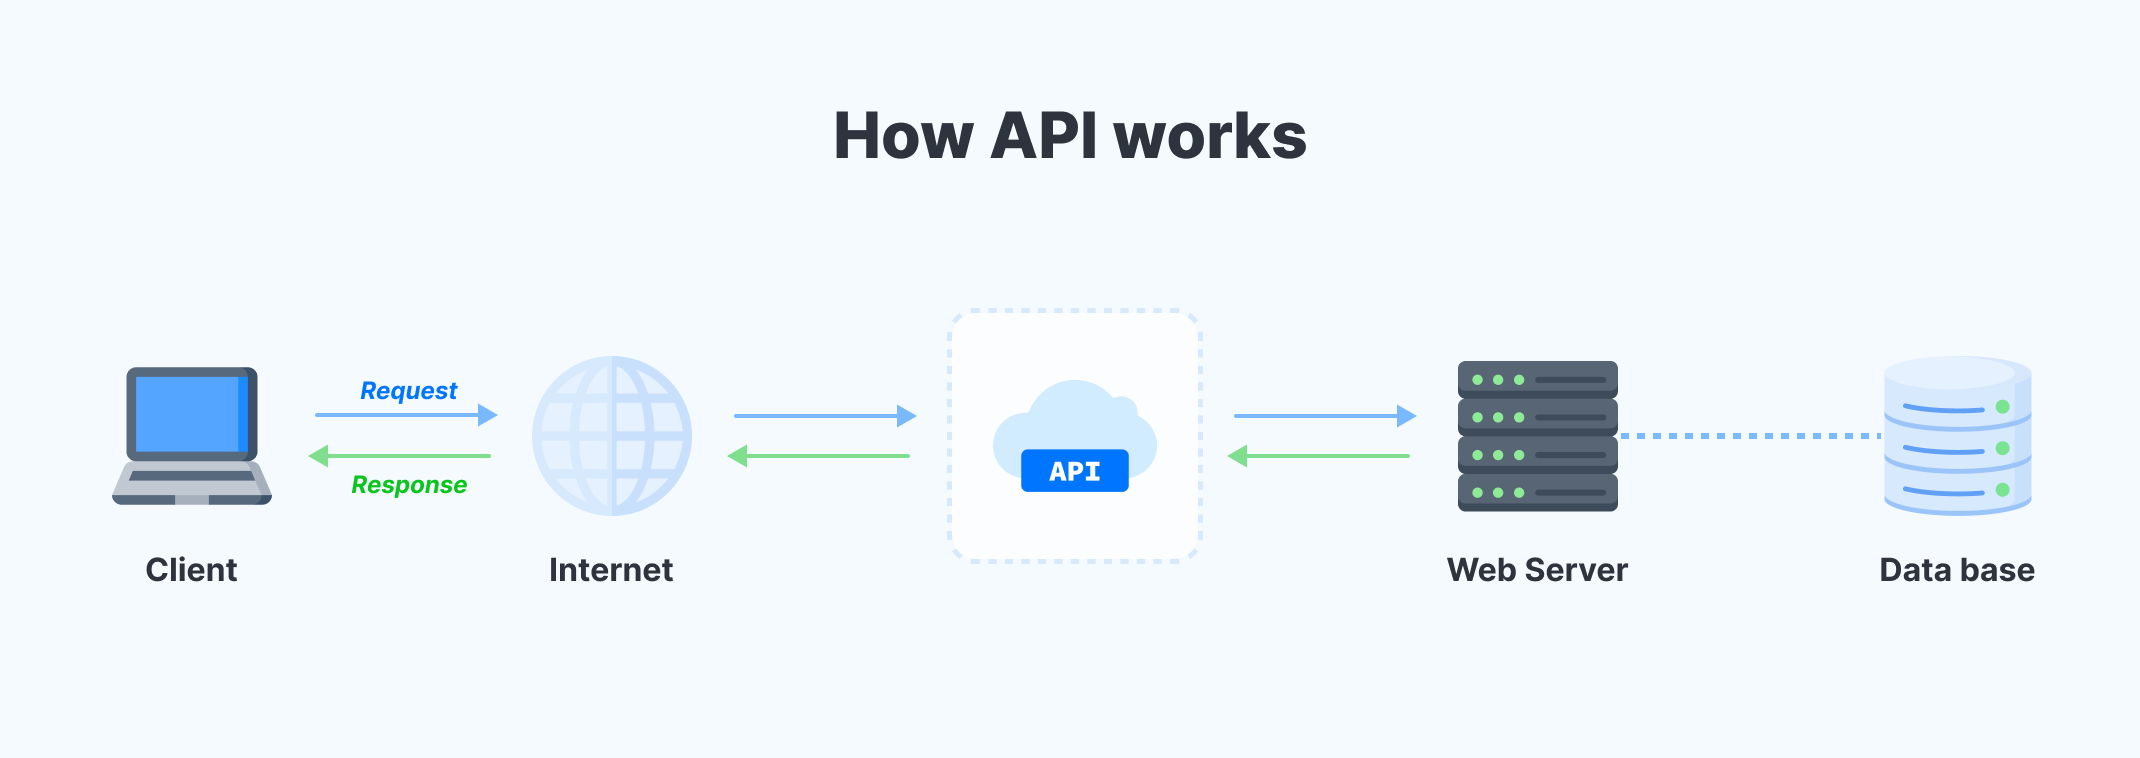 Endpunkte in der API: So funktioniert es